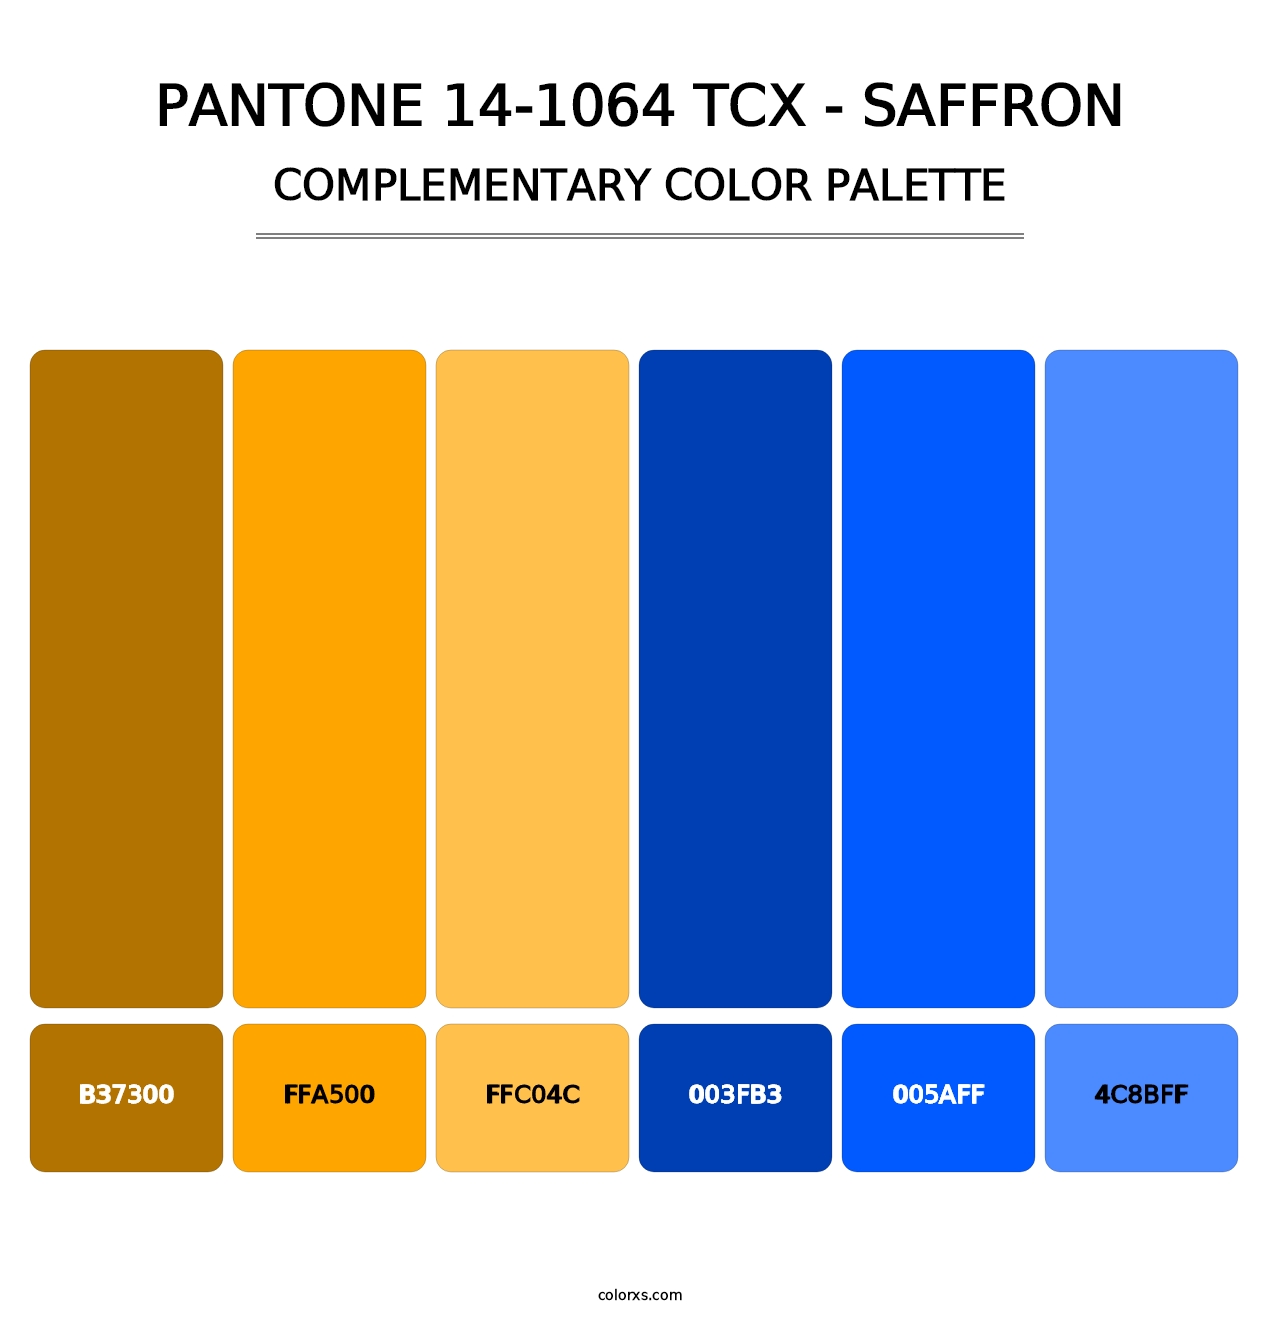 PANTONE 14-1064 TCX - Saffron - Complementary Color Palette